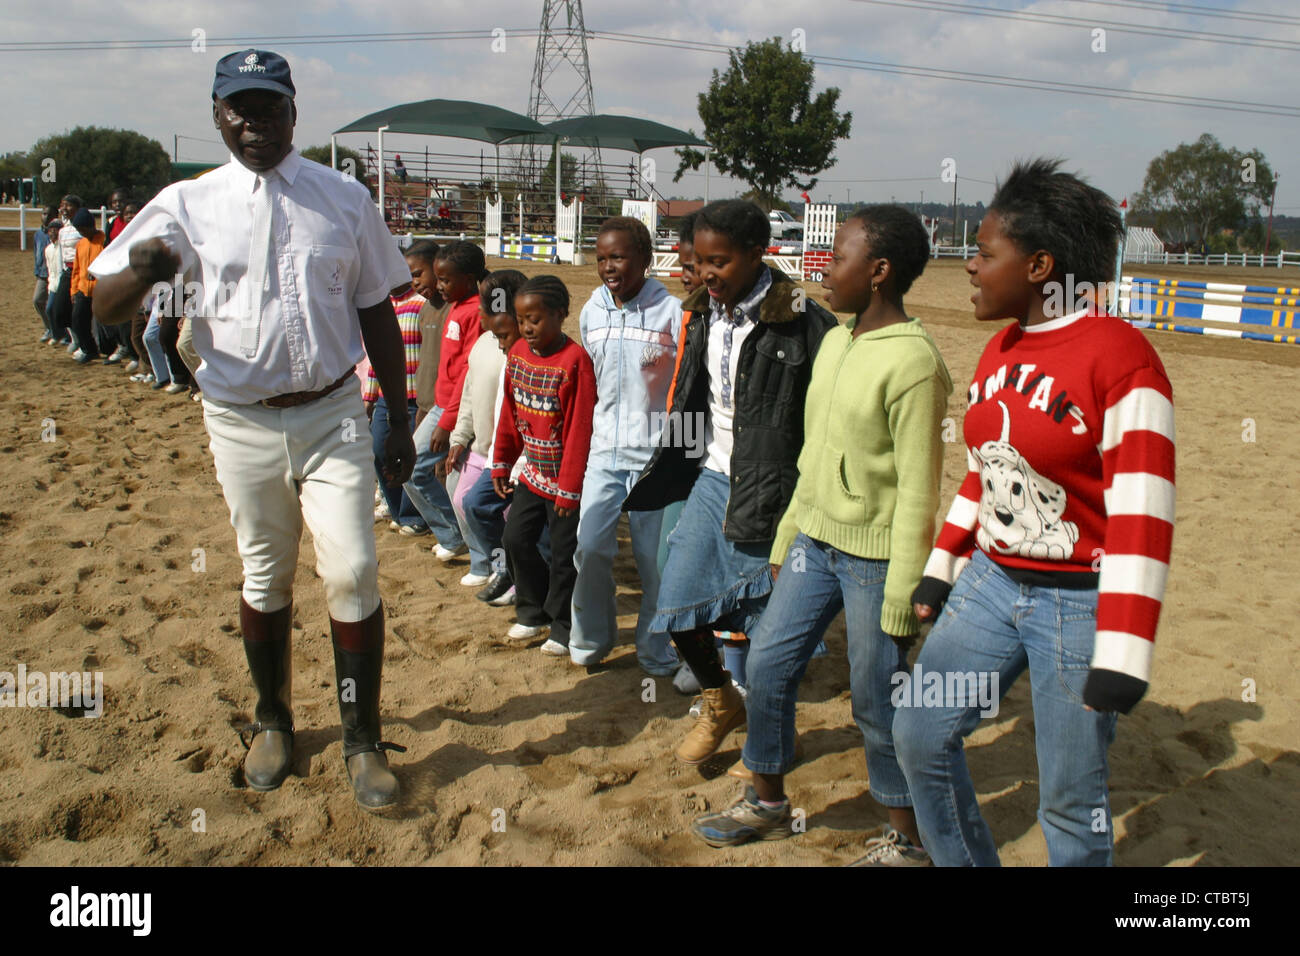 Enos alcuni ragazzi che hanno girato fino gara raccogliere fondi per Soweto scuola di equitazione in questa immagine sono cantare gli ospiti.PhotoAntony Foto Stock